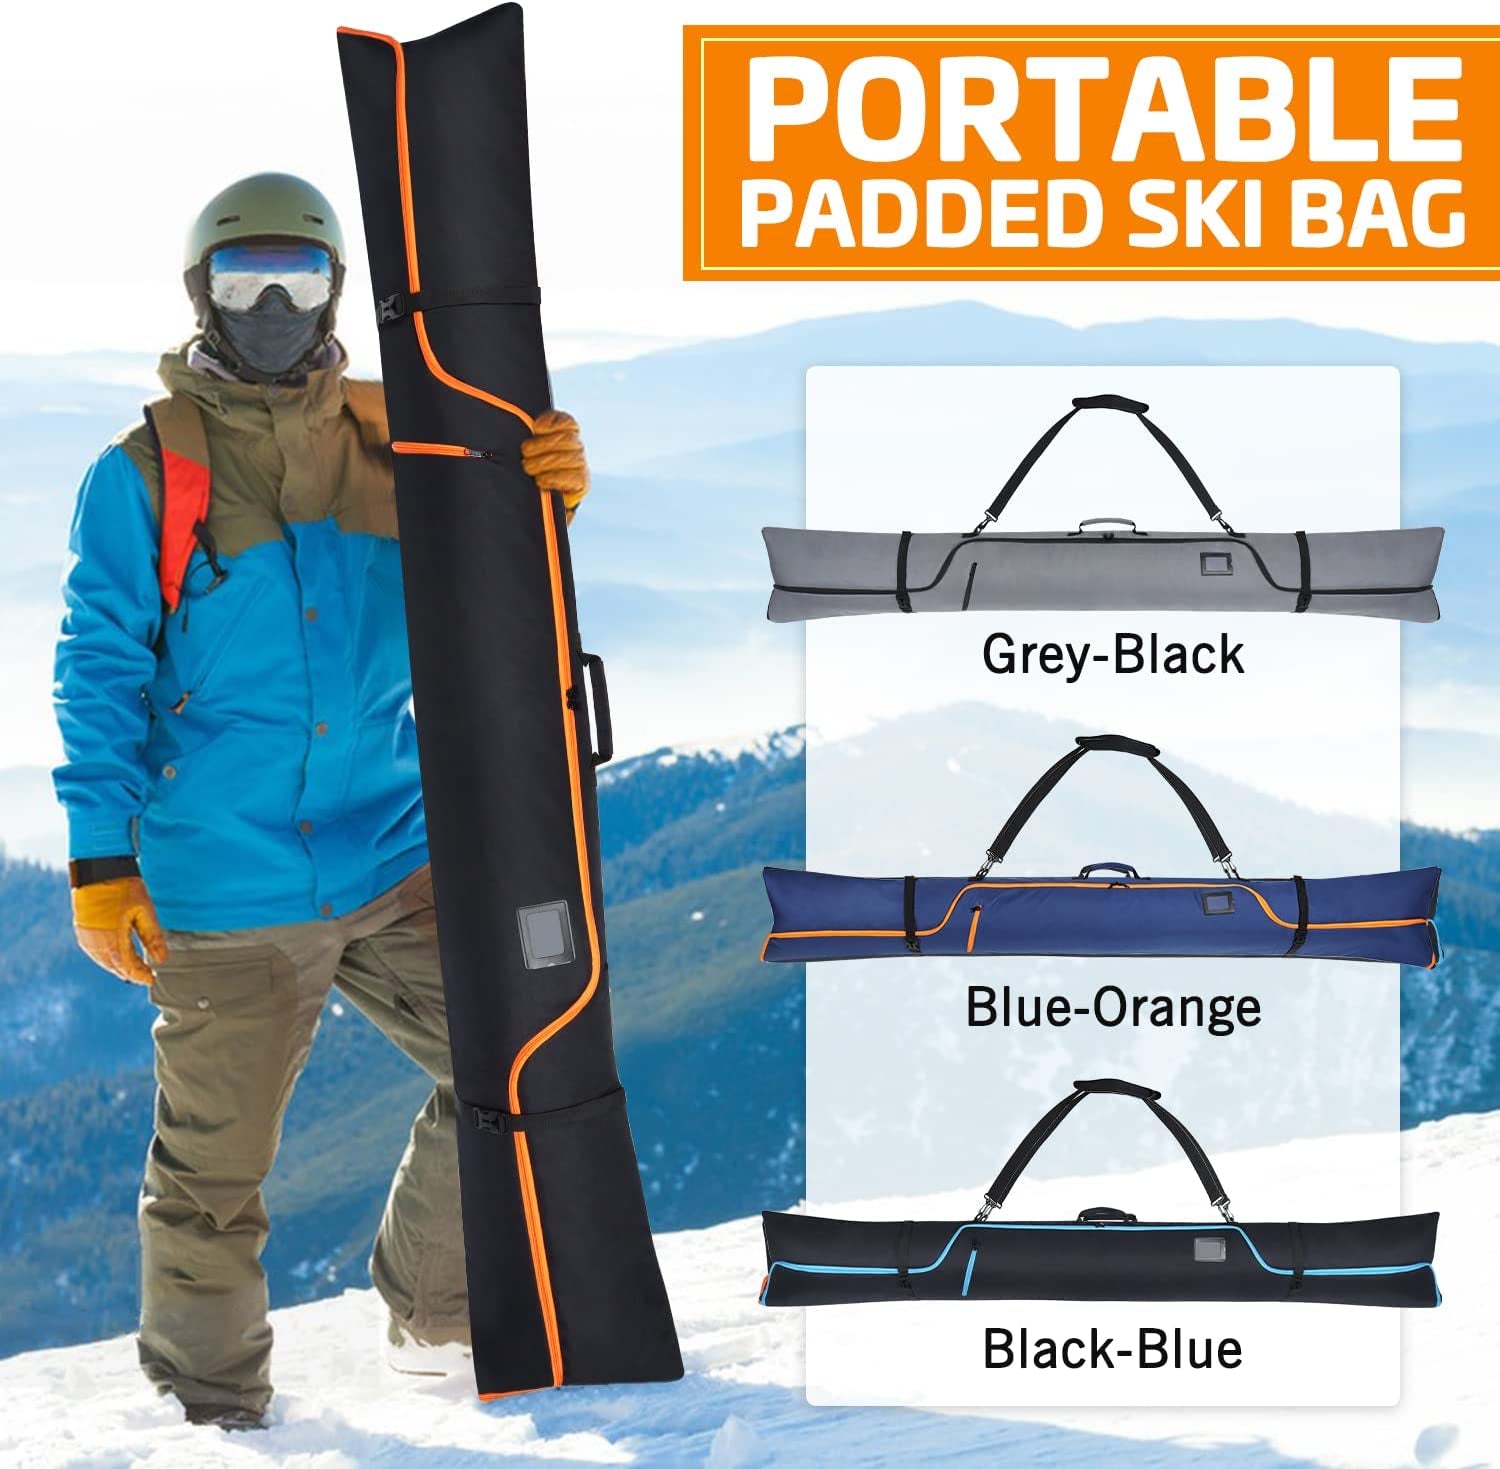 Indusky Ski Bag, Waterproof Full Padded Ski Bag for Air Travel, 900D Polyester Adjustable Length Ski Bag Fit Skis up to 200Cm, Portable Snow Travel Ski Bag with Removable Padded Shoulder Strap